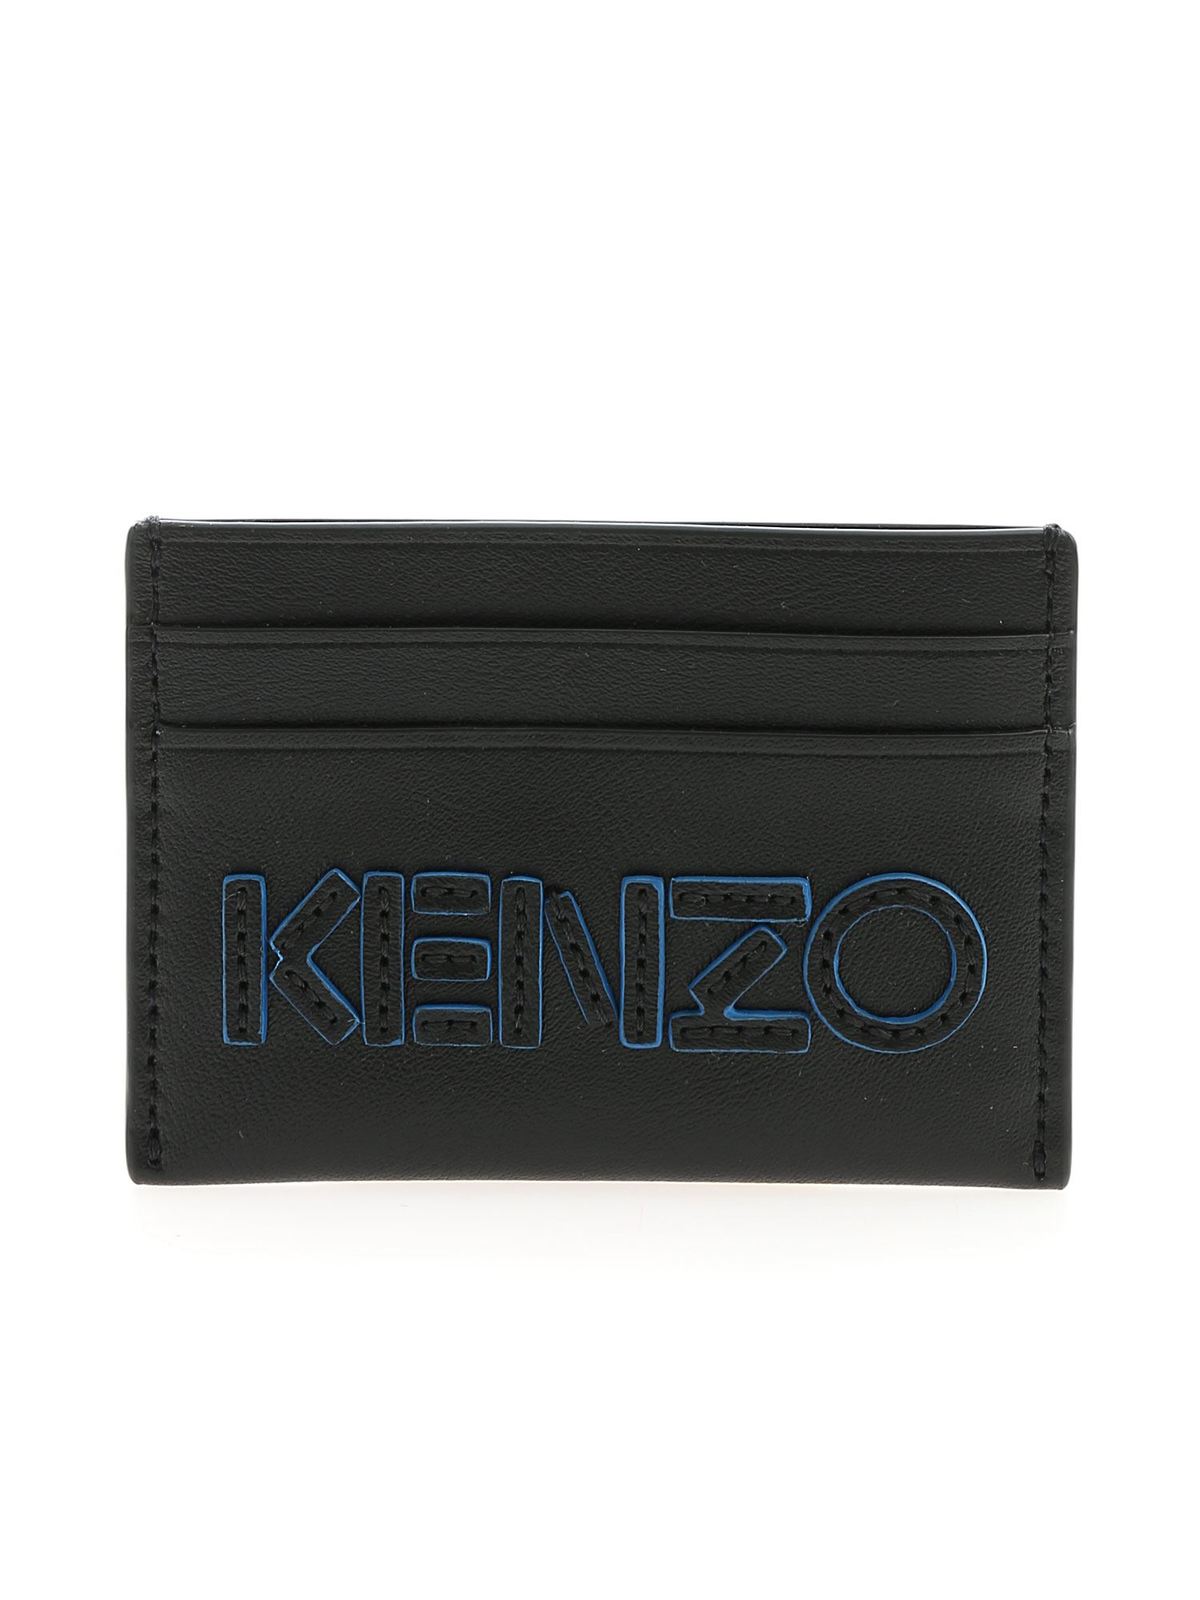 kenzo black on black